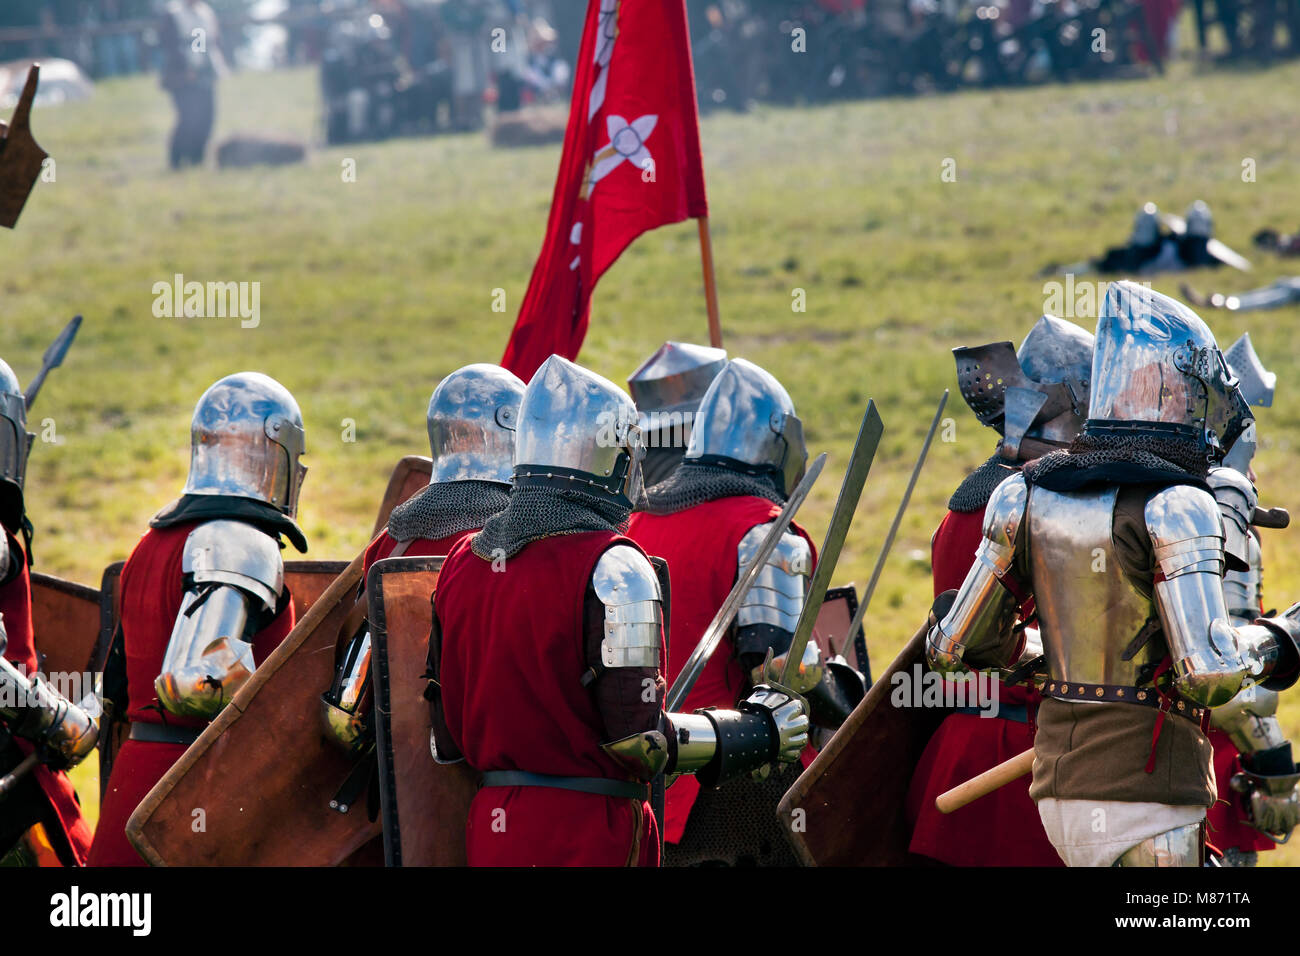 Heay Armored Médiéval prêt pour la bataille de la bataille de Grunwald '1410' reproduisant l'événement. GRUNWALD, Pologne - 16 JUILLET 2011 Banque D'Images